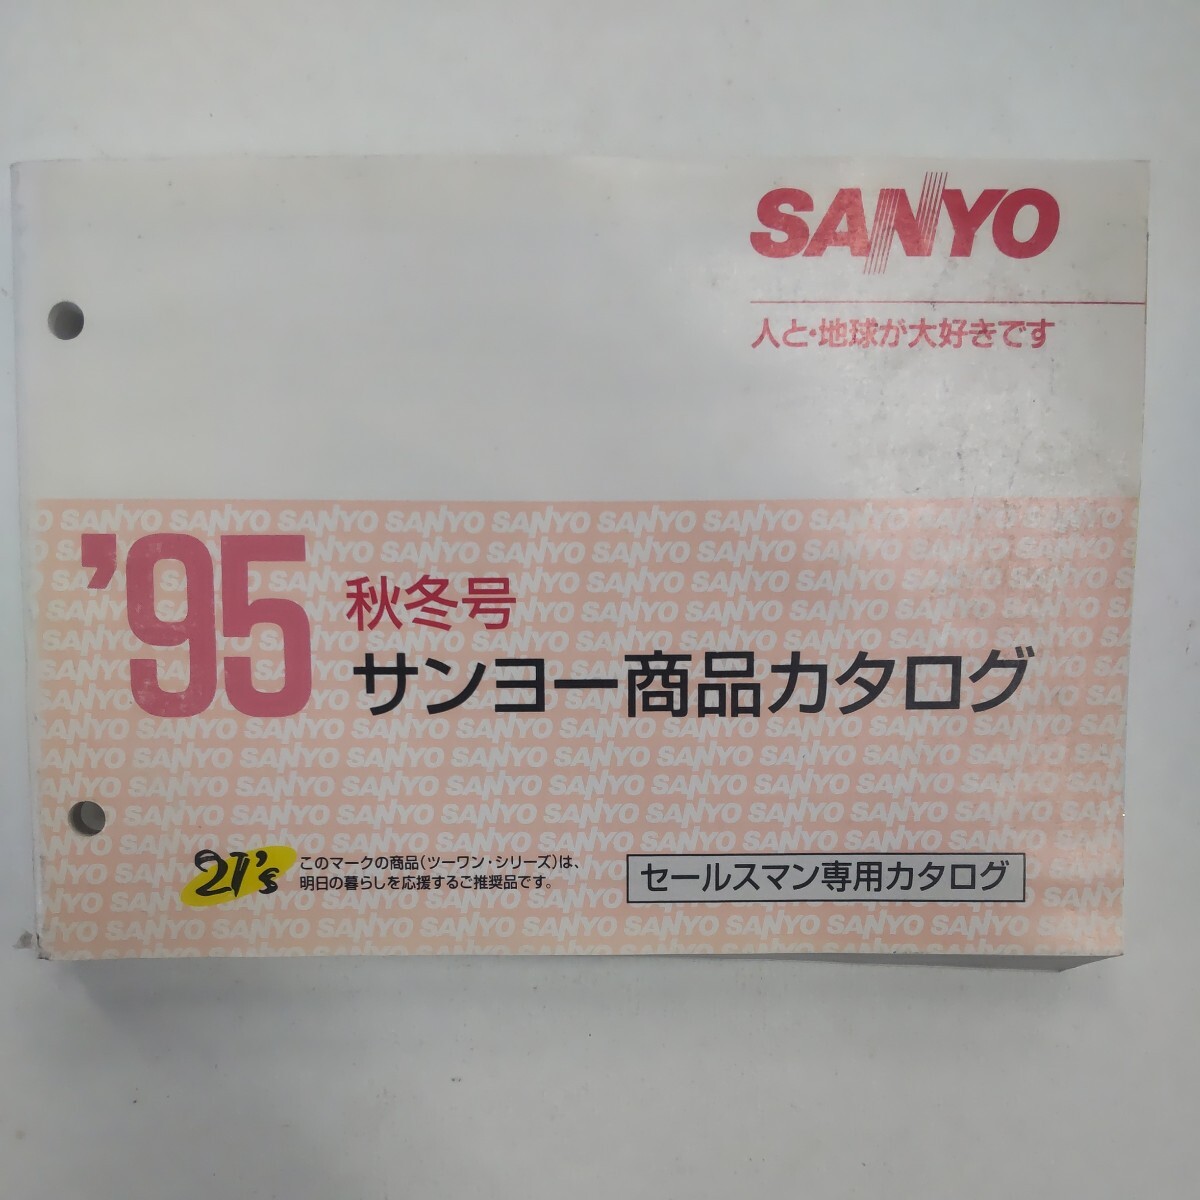 サンヨー 商品カタログ 95年 秋冬号 SANYO セールスマンカタログの画像1